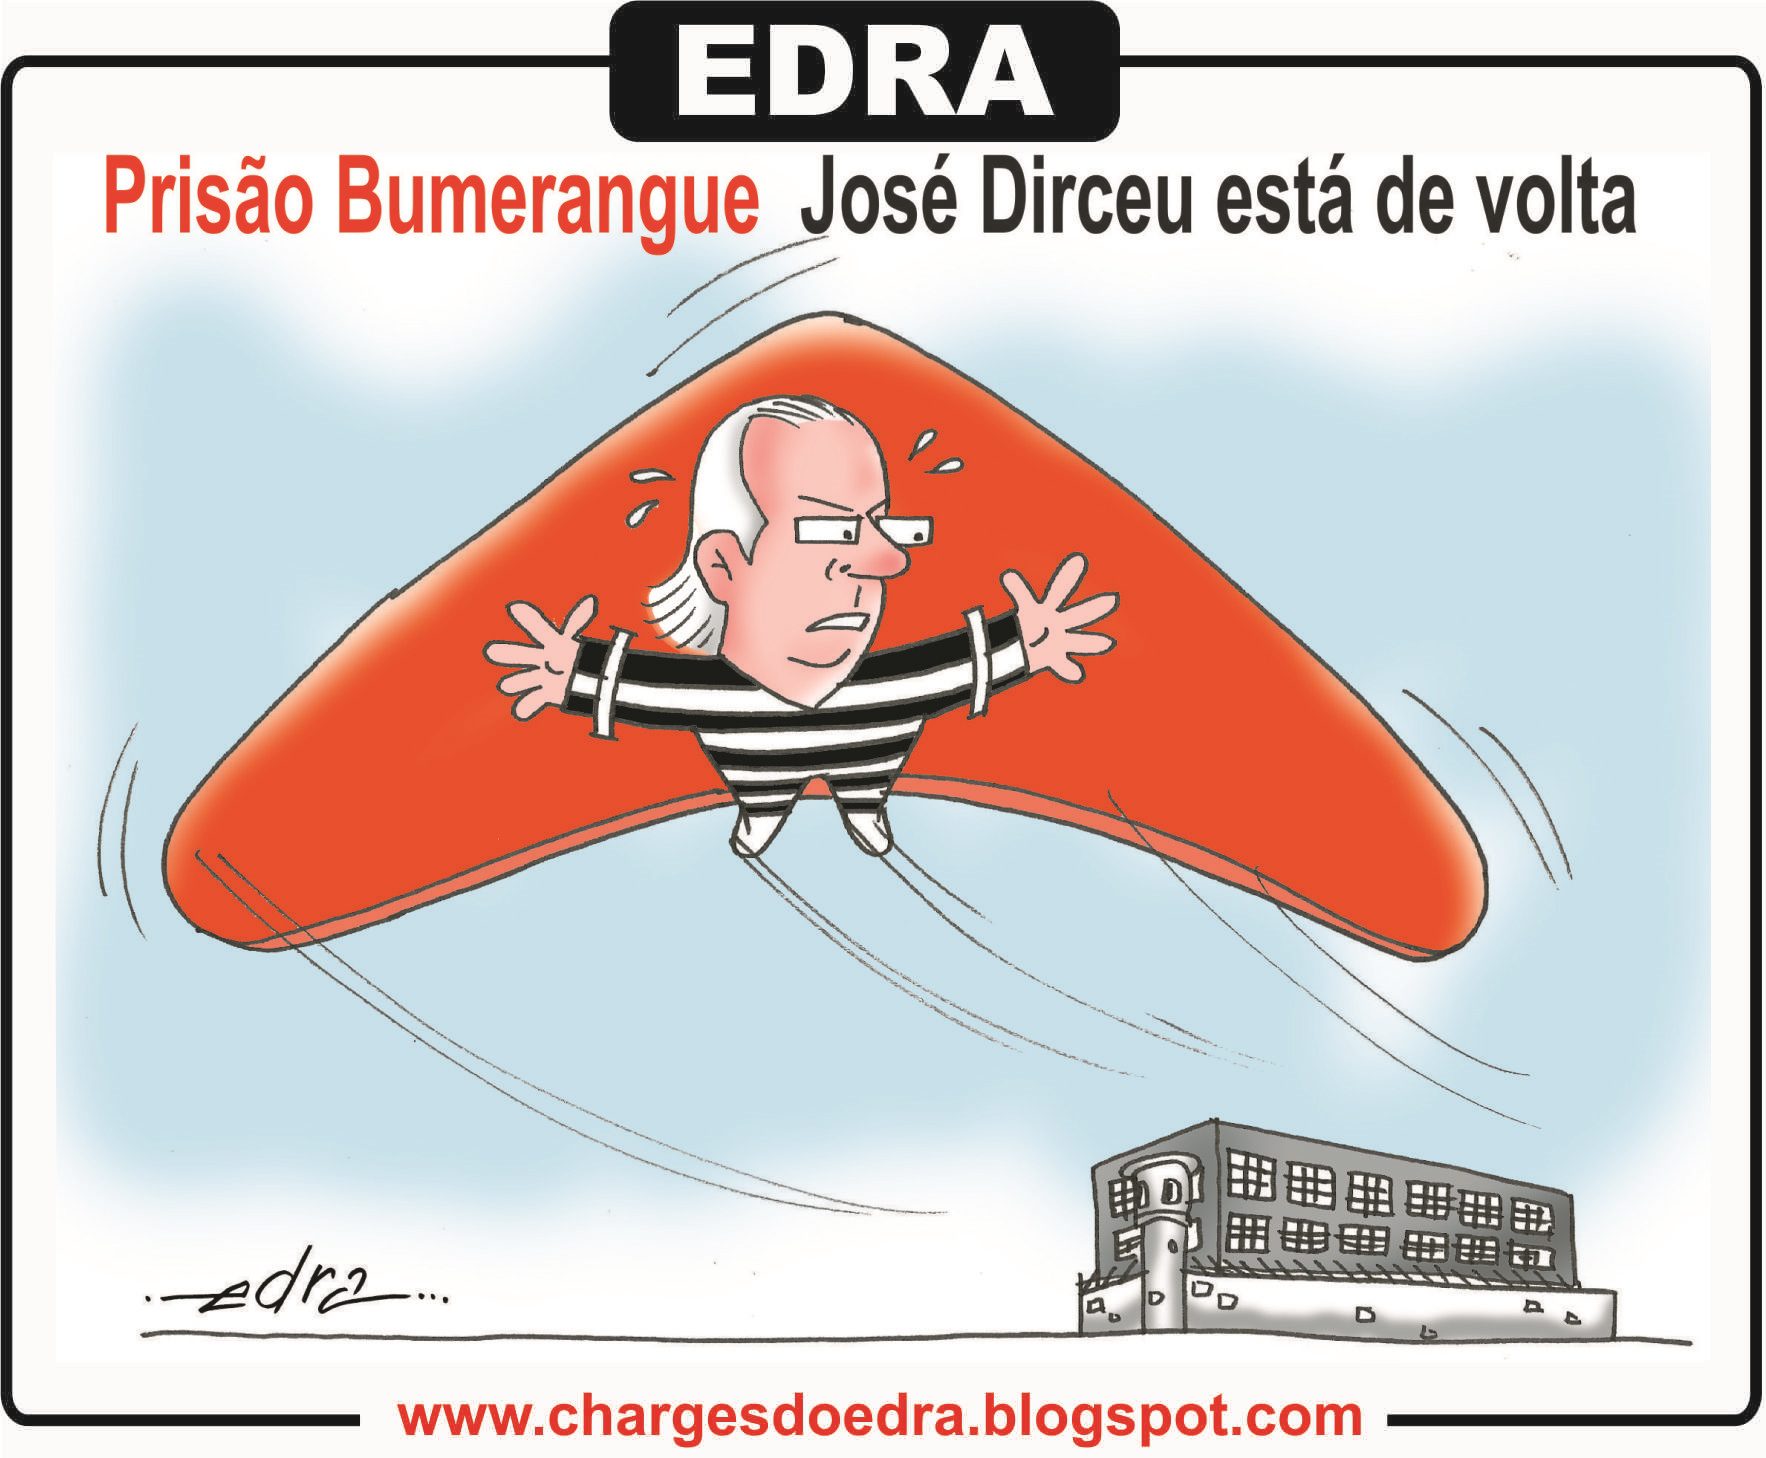 Charge do Edra 05-08-2015